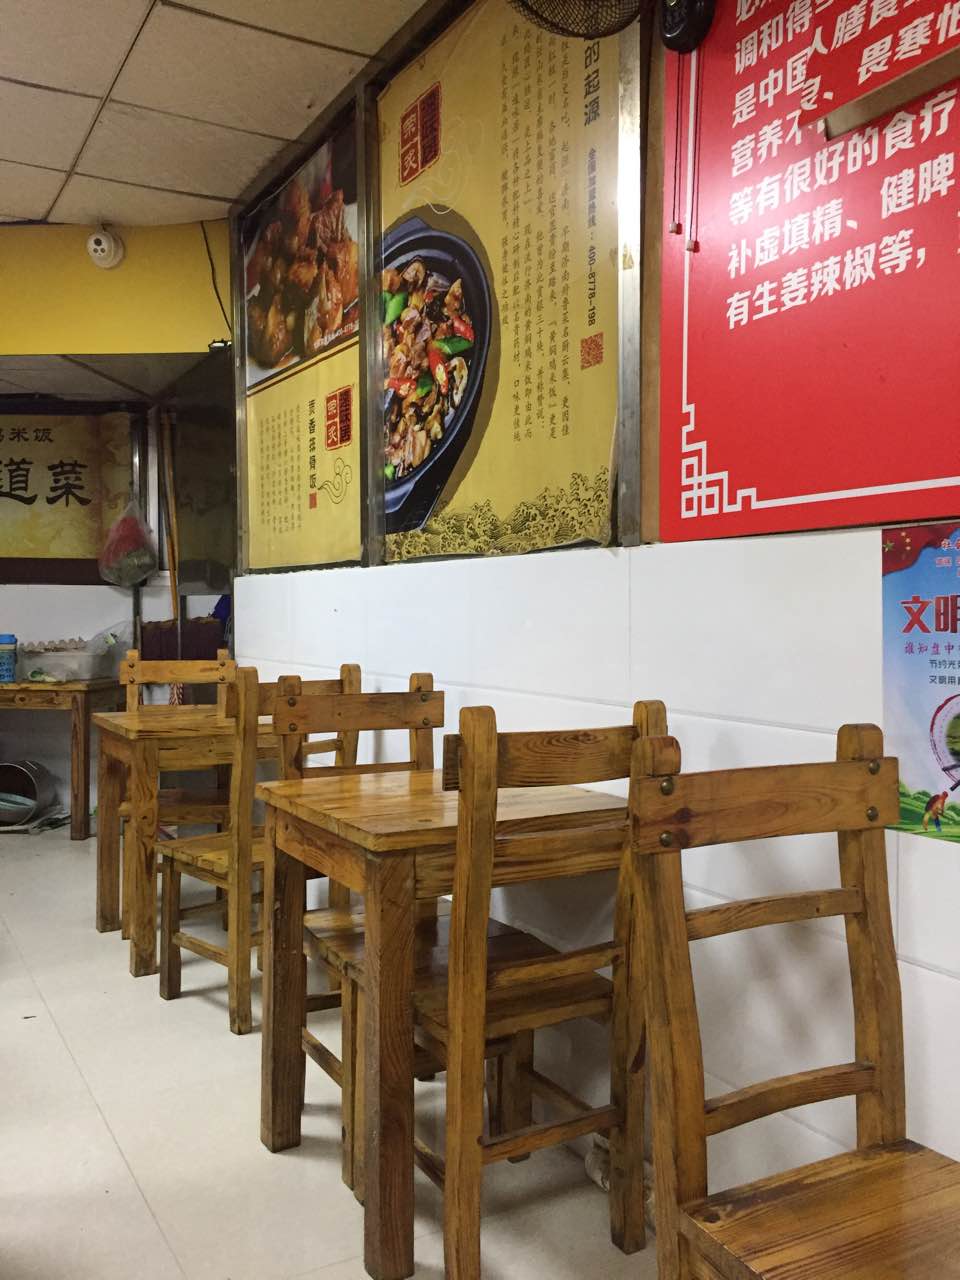 黄焖鸡米饭店内照片图片